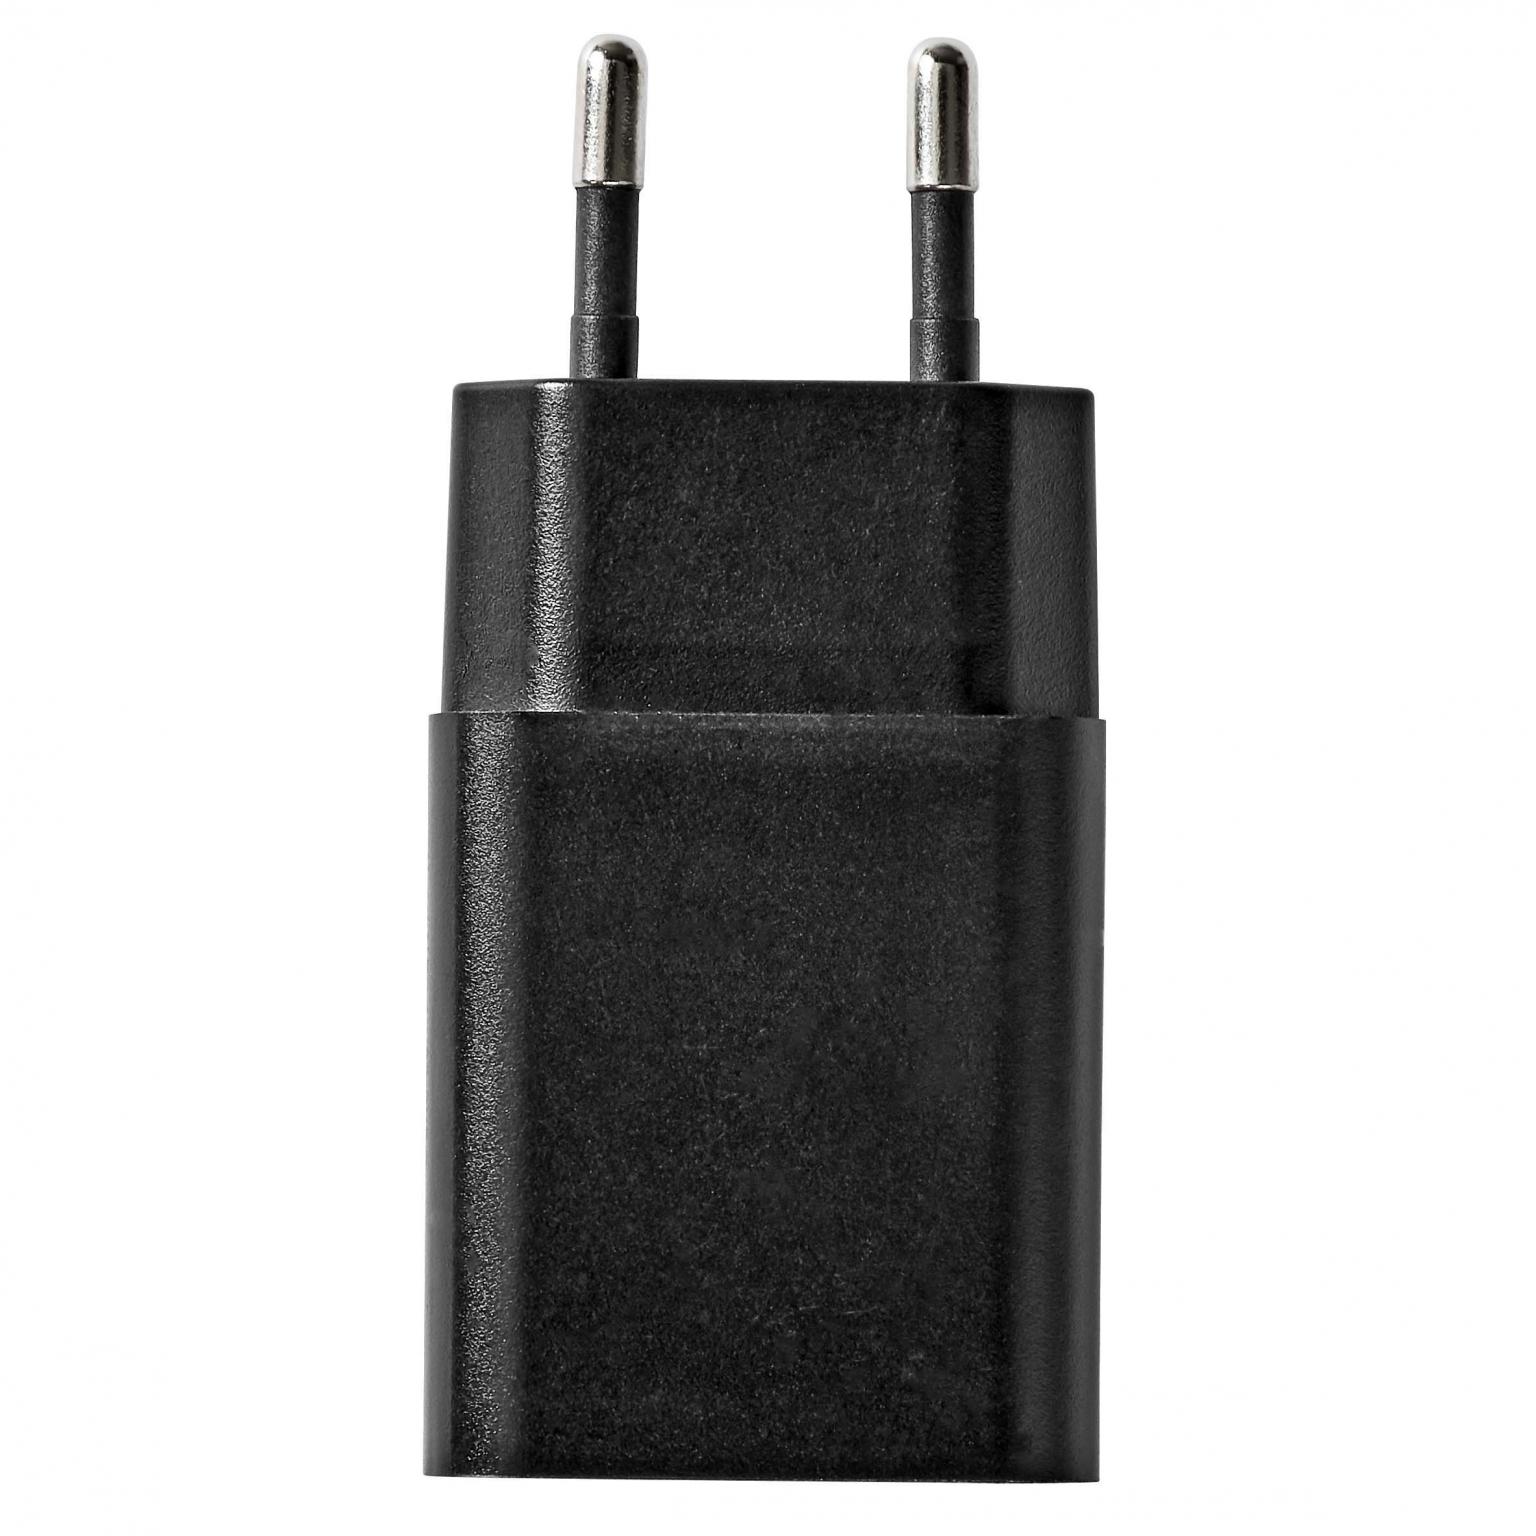 USB A oplader - 1000 mA - Allteq